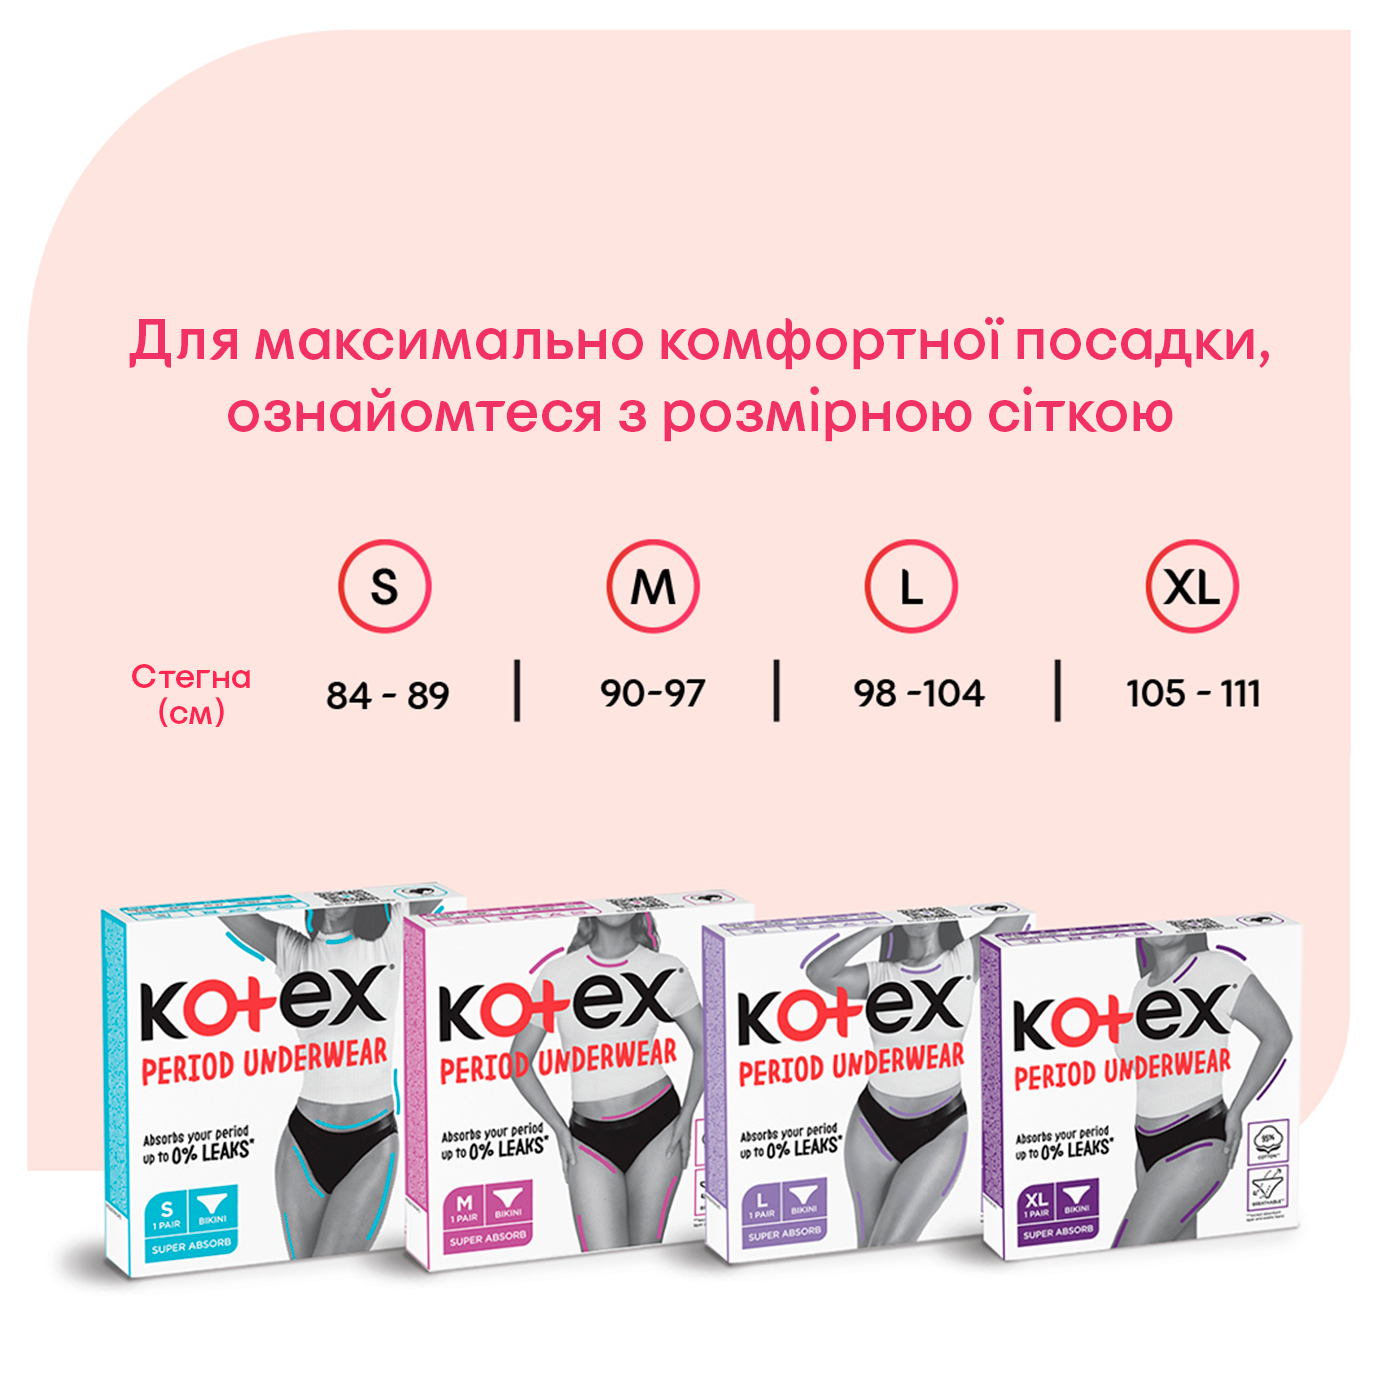 Менструальное белье Kotex размер L, 1 шт. - фото 7